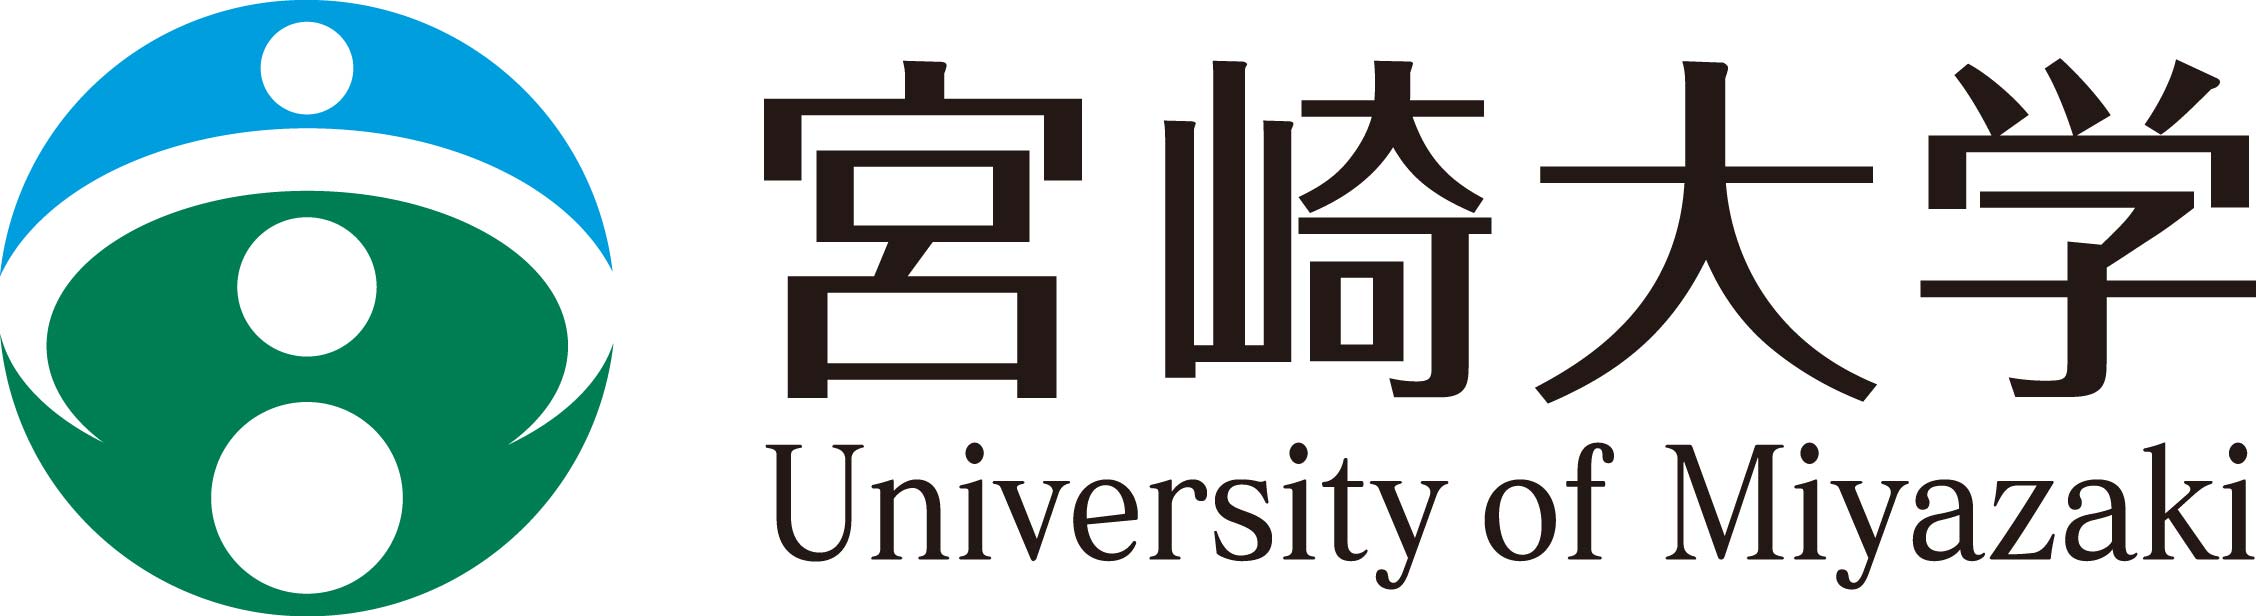 University of Miyazaki